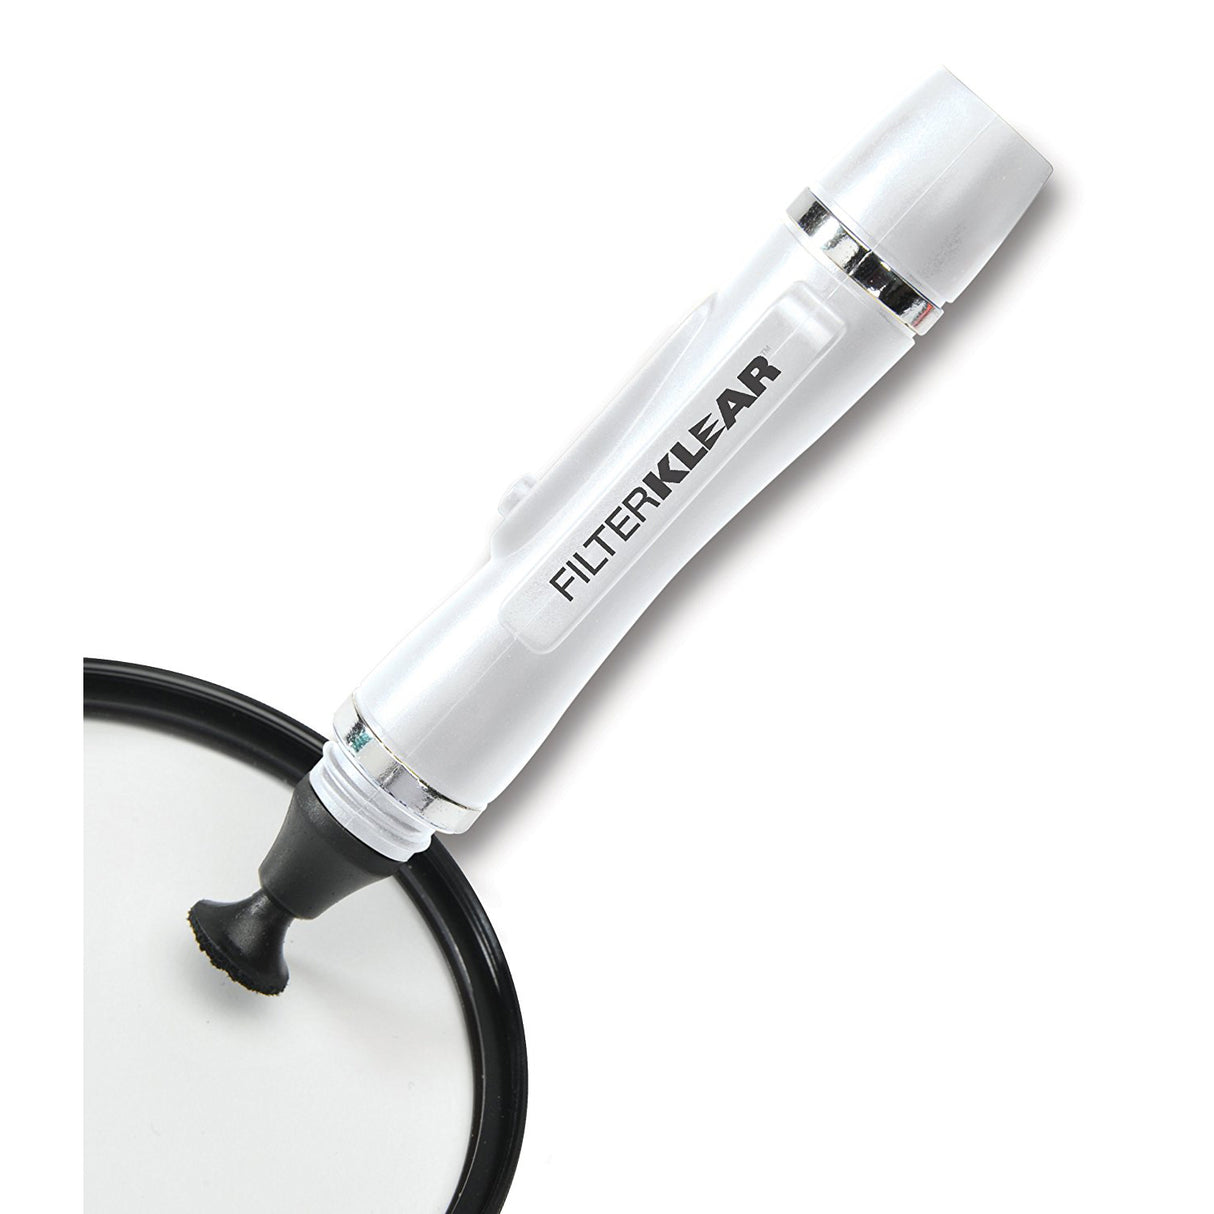 Lenspen Filterklear Elite Cleaning Pen for Filter